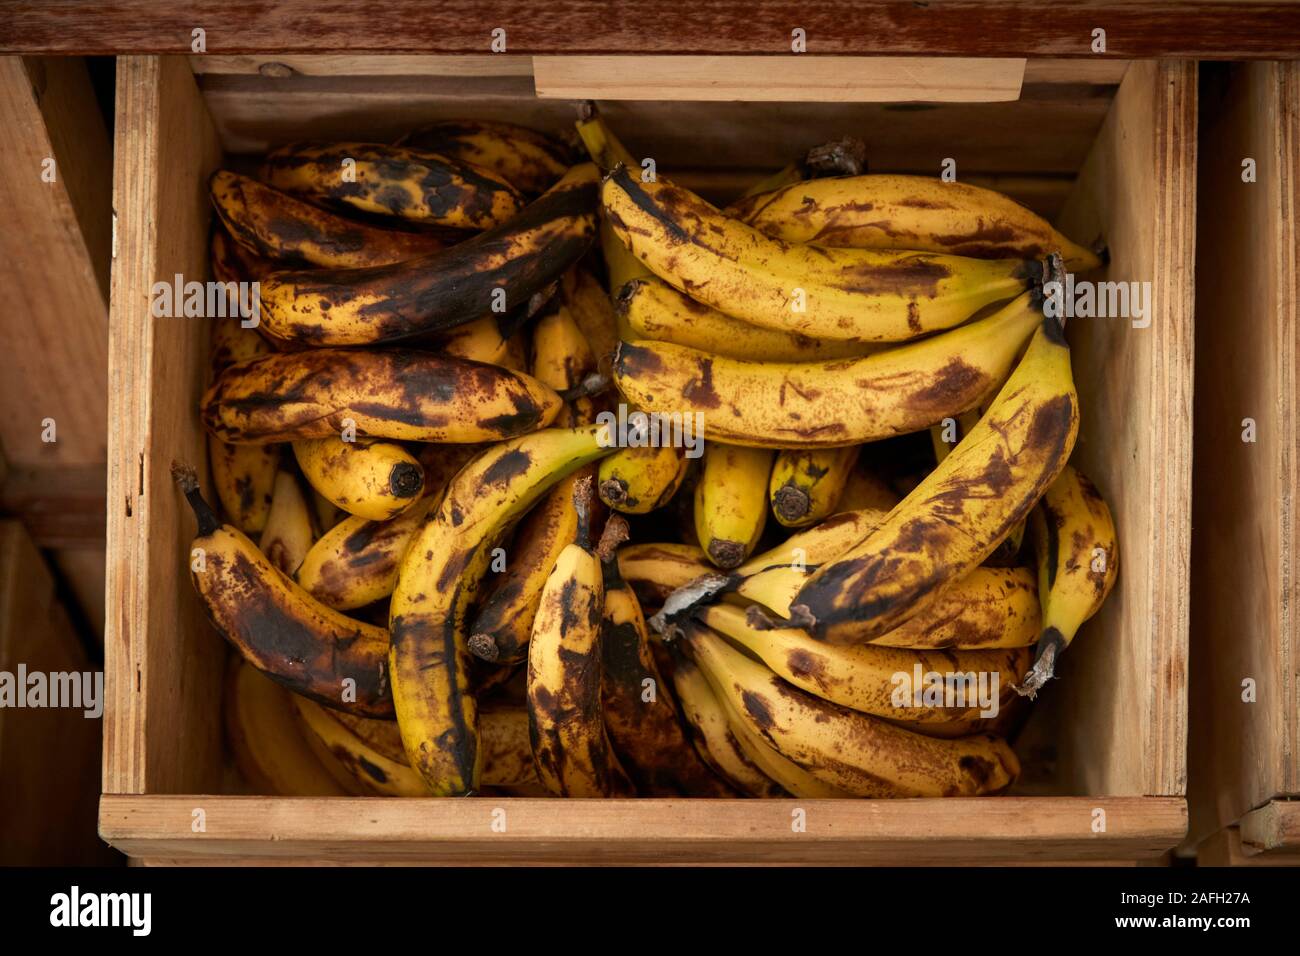 Affichage de la banane à l'emballage en plastique durable Épicerie libre Banque D'Images